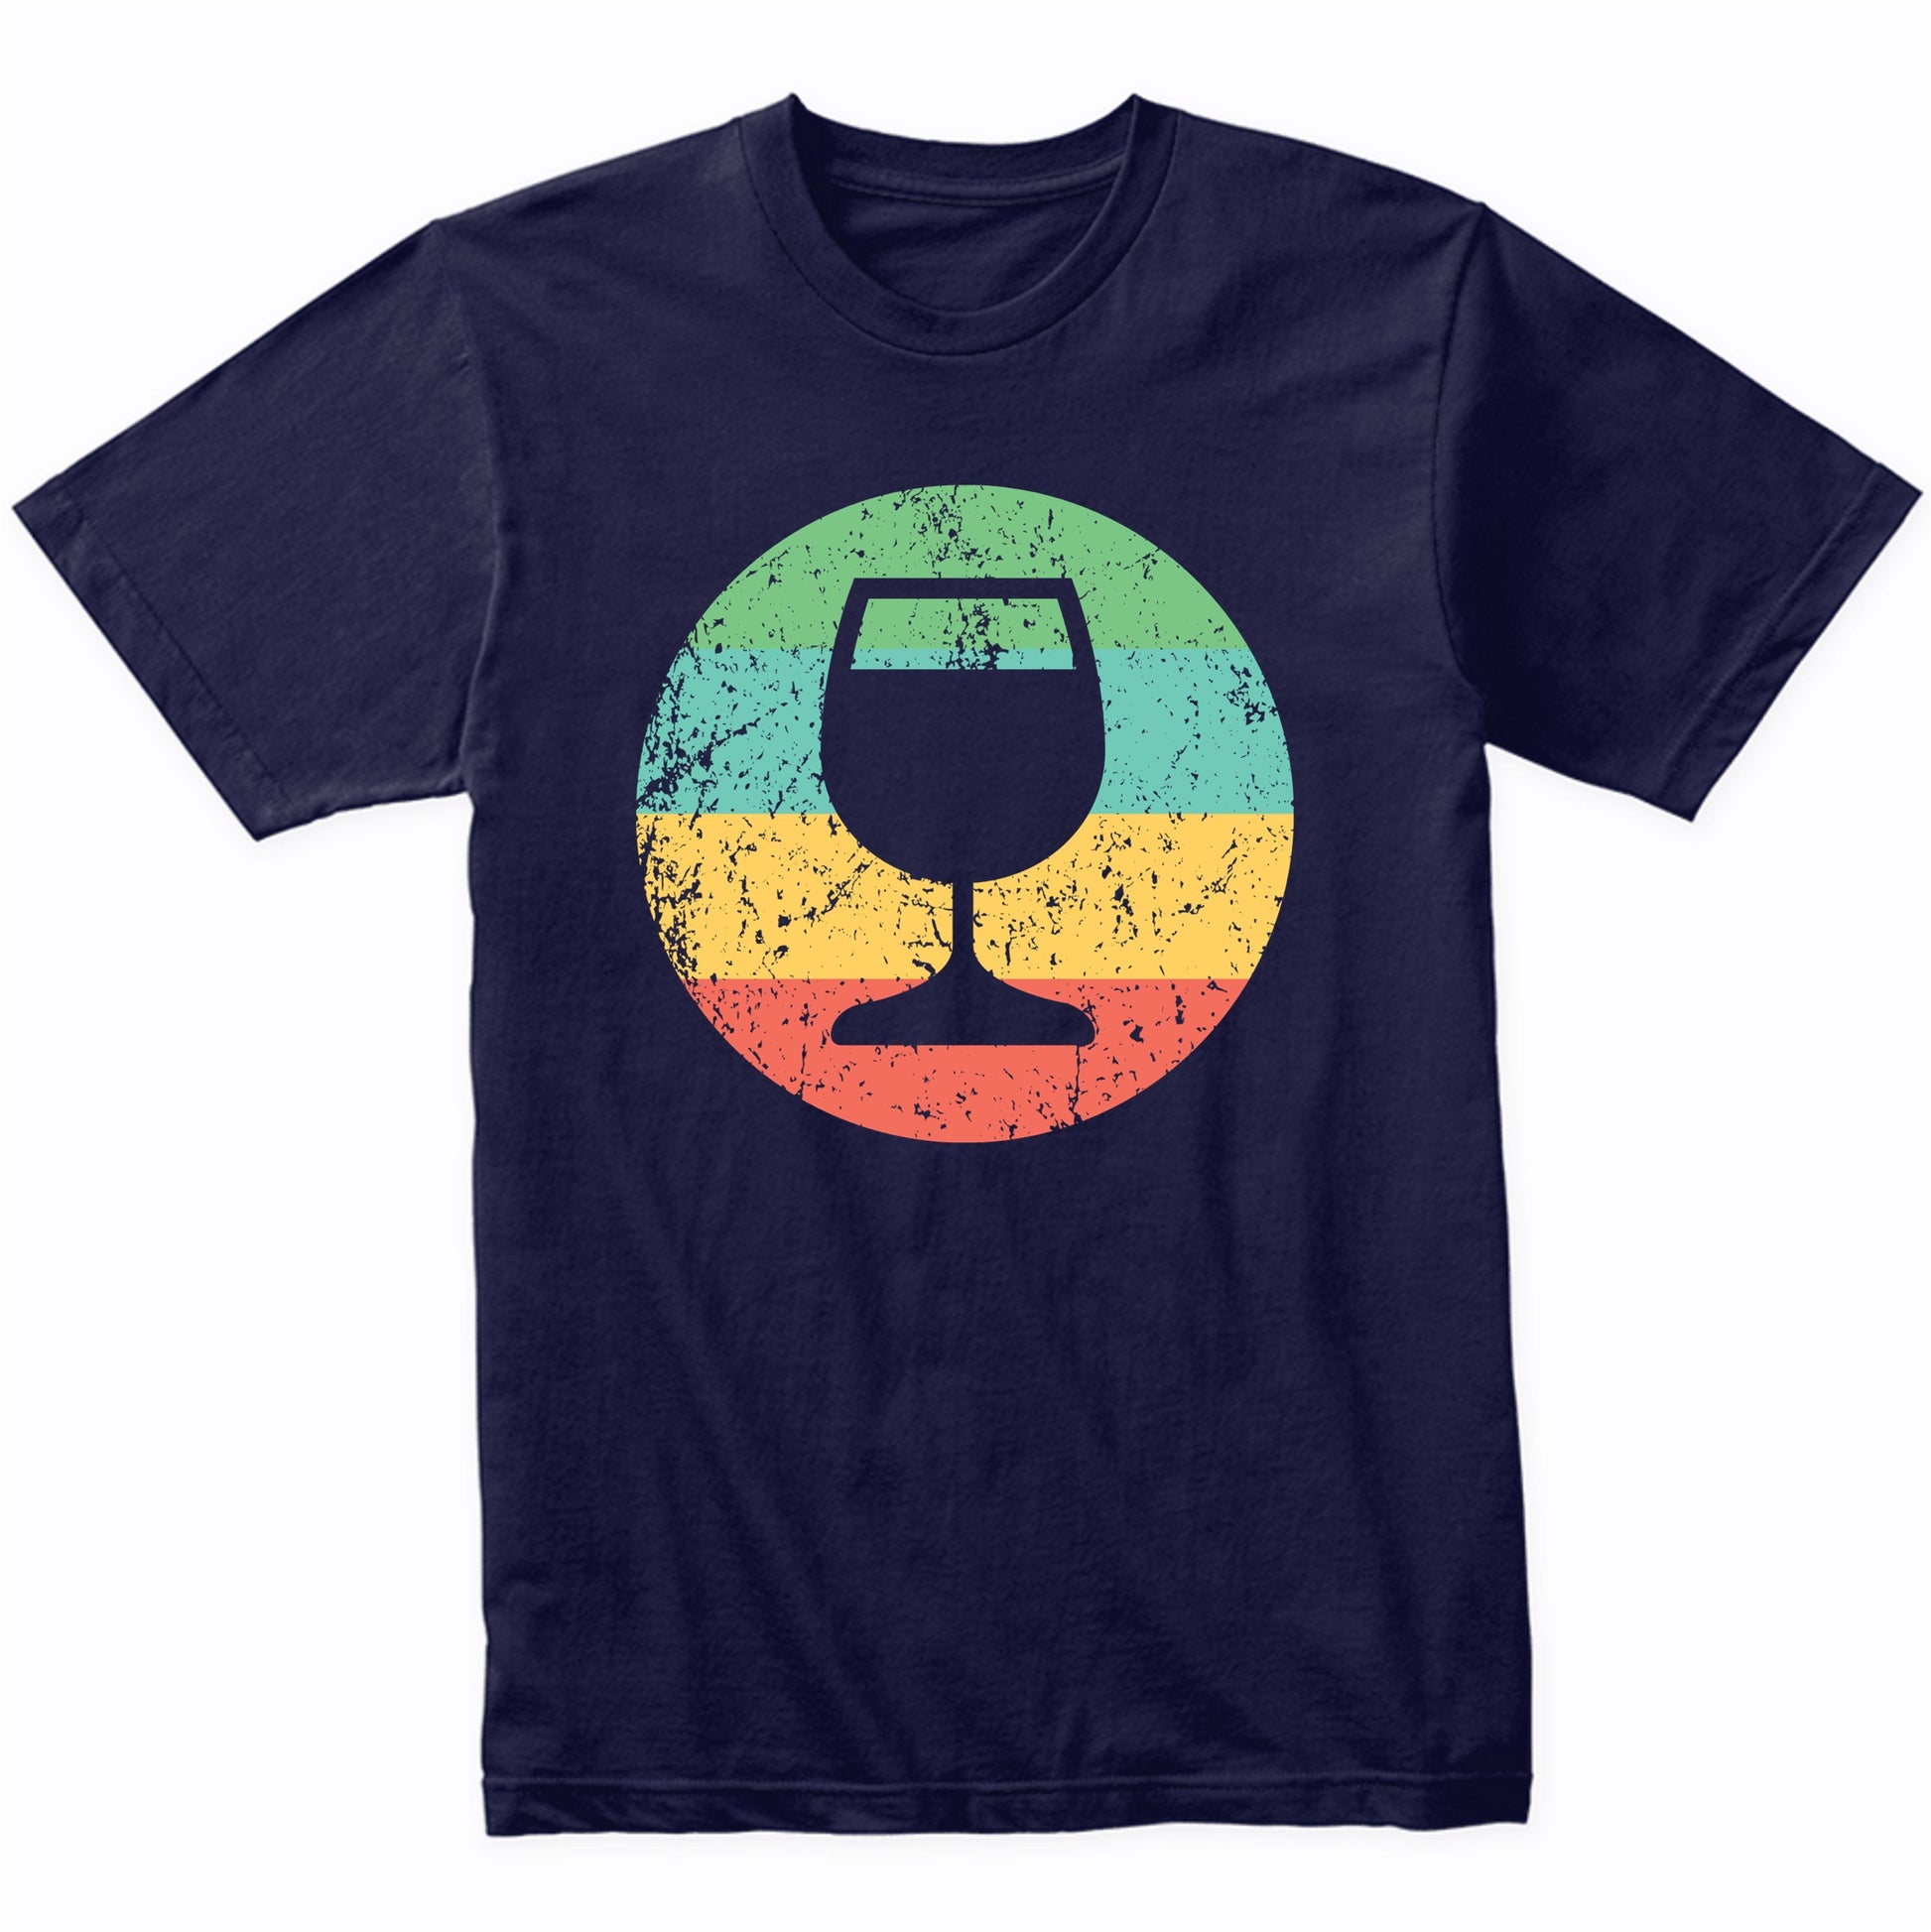 Wine Connoisseur Shirt - Vintage Retro Wine Glass Shirt